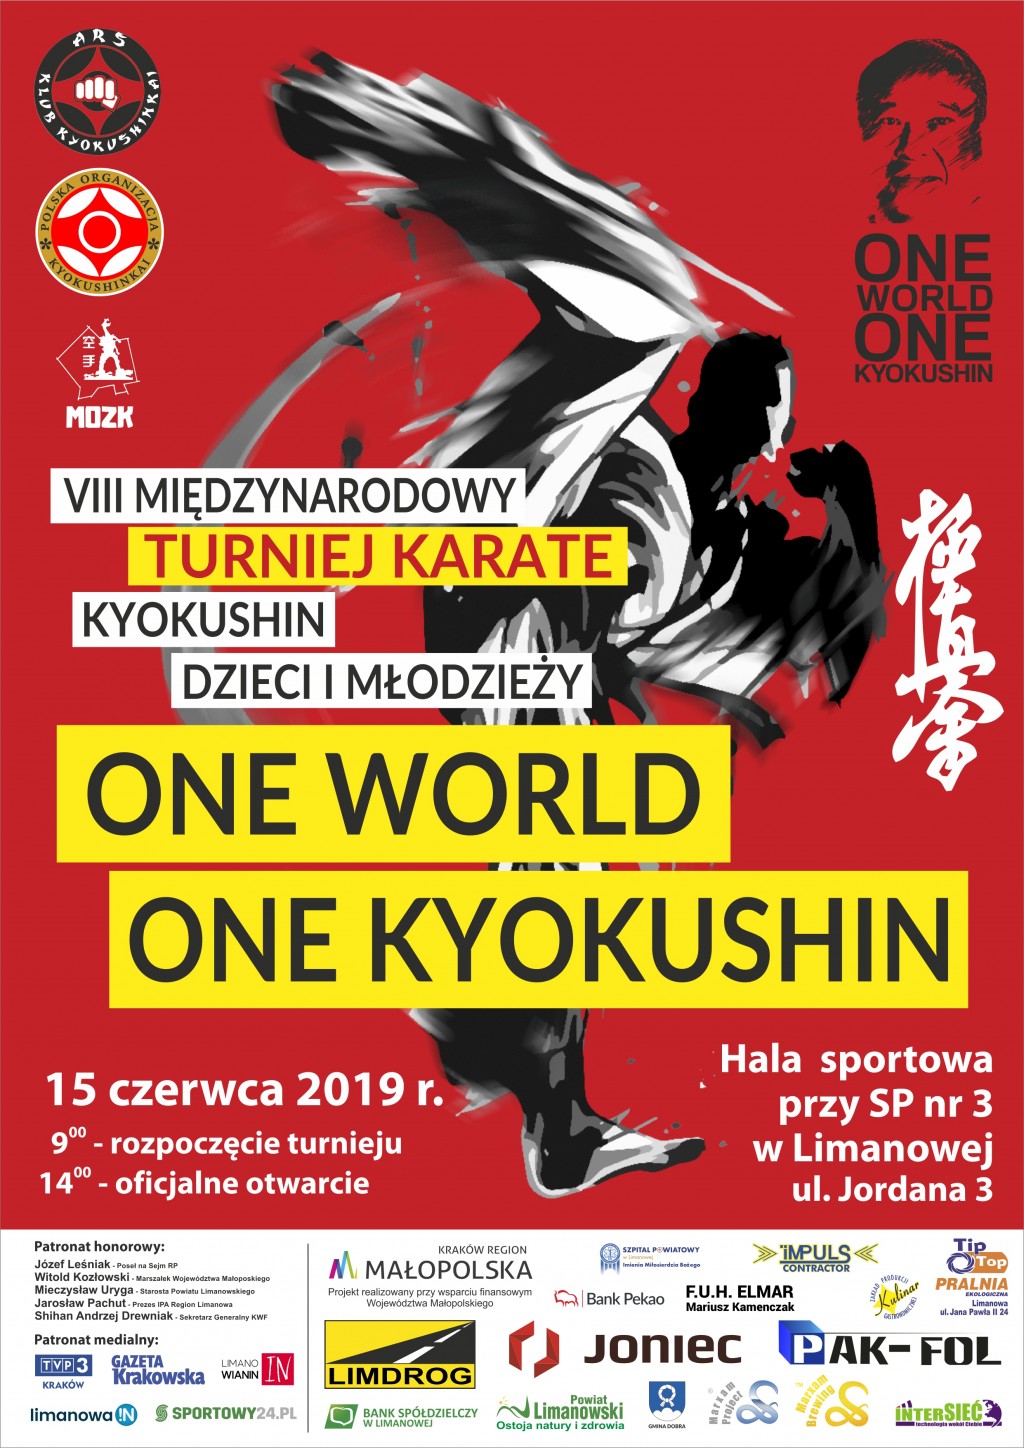 Międzynarodowy Turniej Karate Kyokushin Dzieci i Młodzieży ”One World One Kyokushin” - 15 czerwca 2019 r. Limanowa